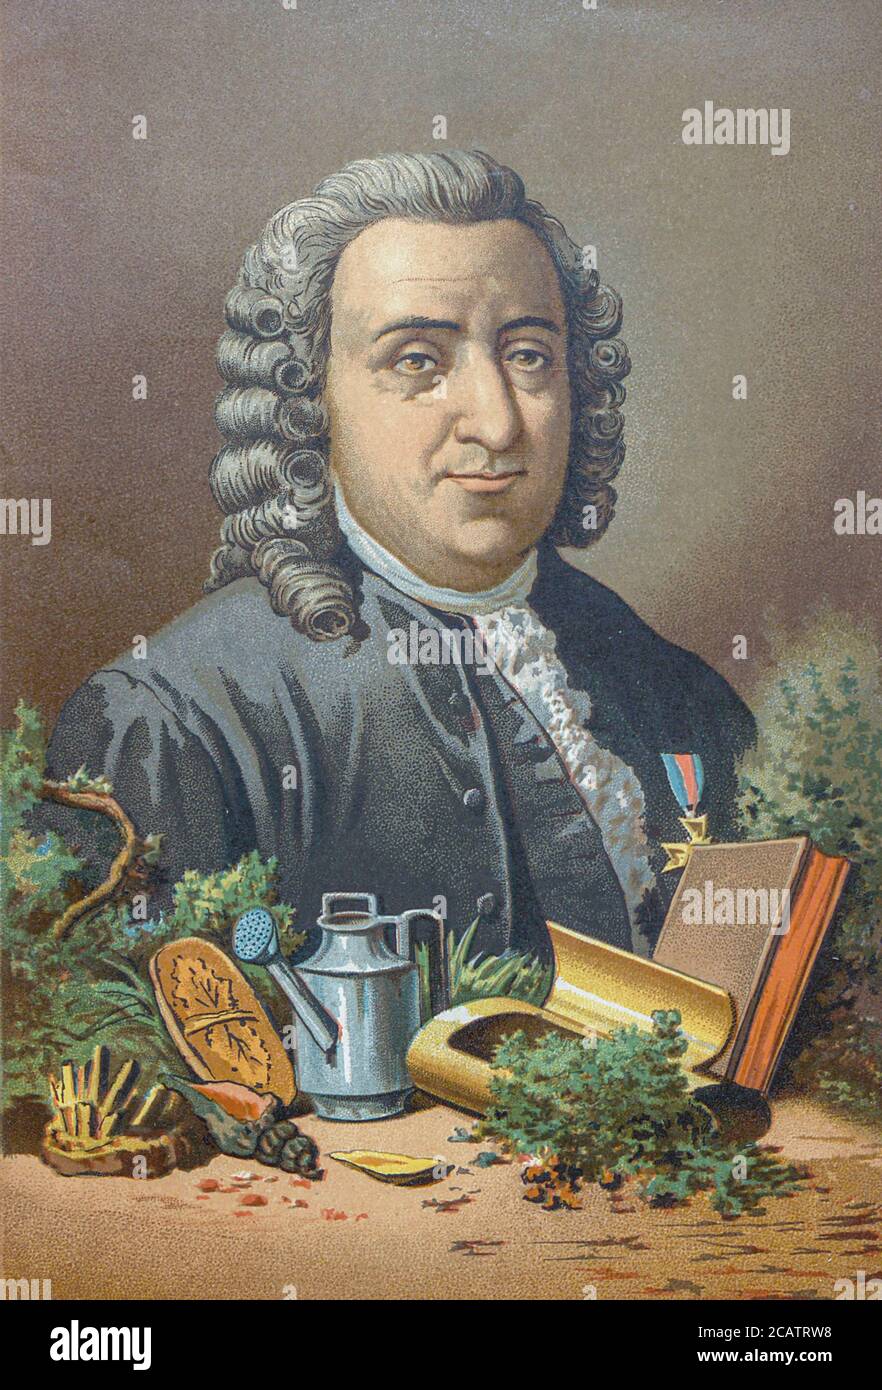 Carl Linneo Carl Linneo Carl Linneo (23 de mayo de 1707 – 10 de enero de 1778), también conocido después de su ennoblement como Carl von Linné. Fue un botánico, zoólogo y médico sueco que formalizó la nomenclatura binomial, el sistema moderno de nomenclatura de organismos. Es conocido como el "padre de la taxonomía moderna". Muchos de sus escritos estaban en latín, y su nombre se representa en latín como Carolus Linnæus (más tarde como Carolus A Linné). Del libro la ciencia y sus hombres : vidas de los sabios ilustres desde la antigüedad hasta el sello XIX T. 3 [la ciencia y sus hombres: Vidas de los sabios ilustres desde la antigüedad hasta t Foto de stock